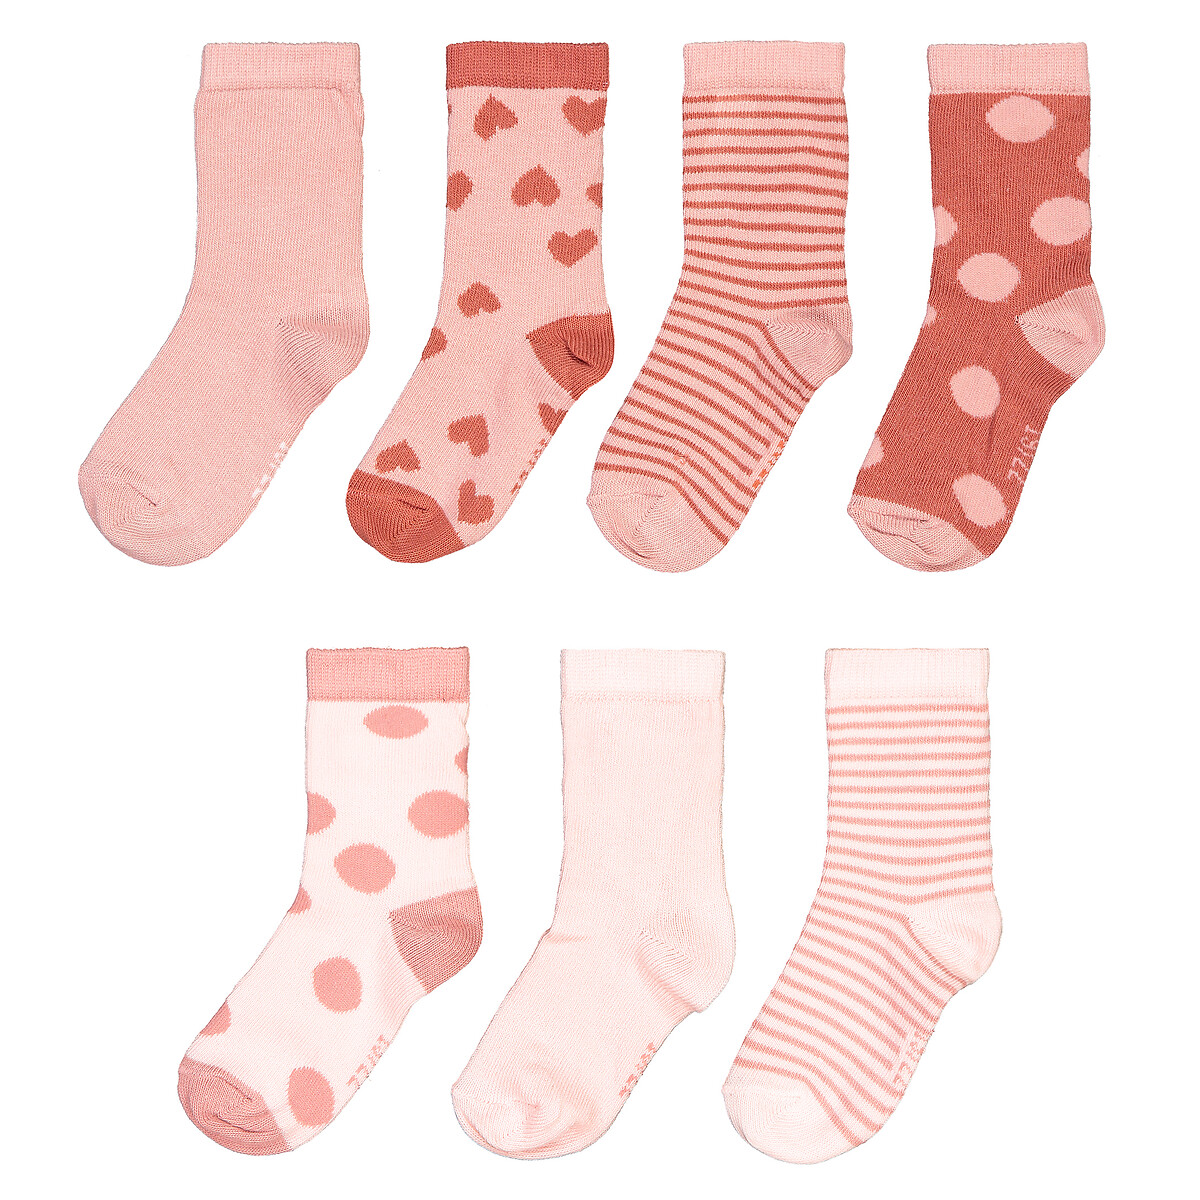 Комплект из 7 пар носков Из биохлопка размеры 1518-2326 15/18 розовый